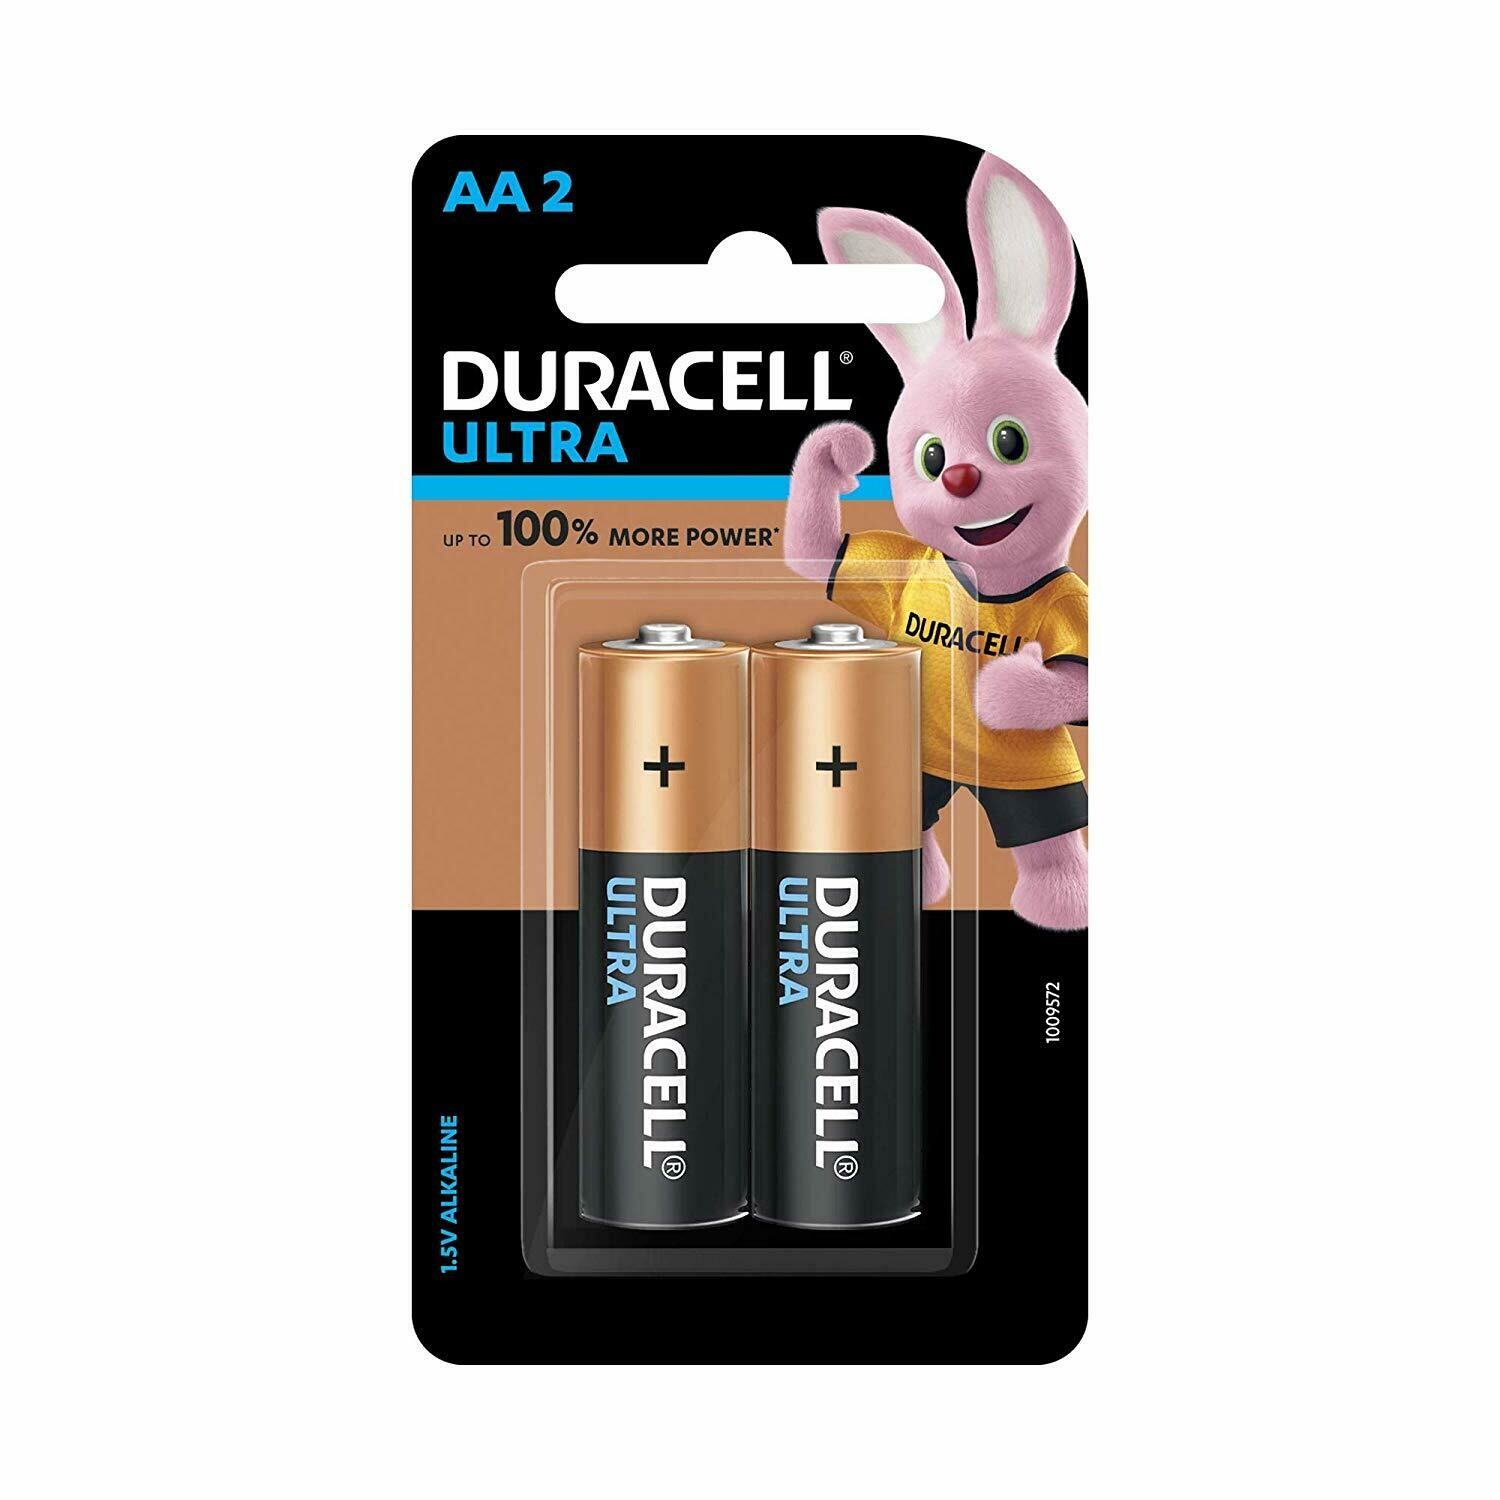 Duracell Ultra AA, 2 Batteries